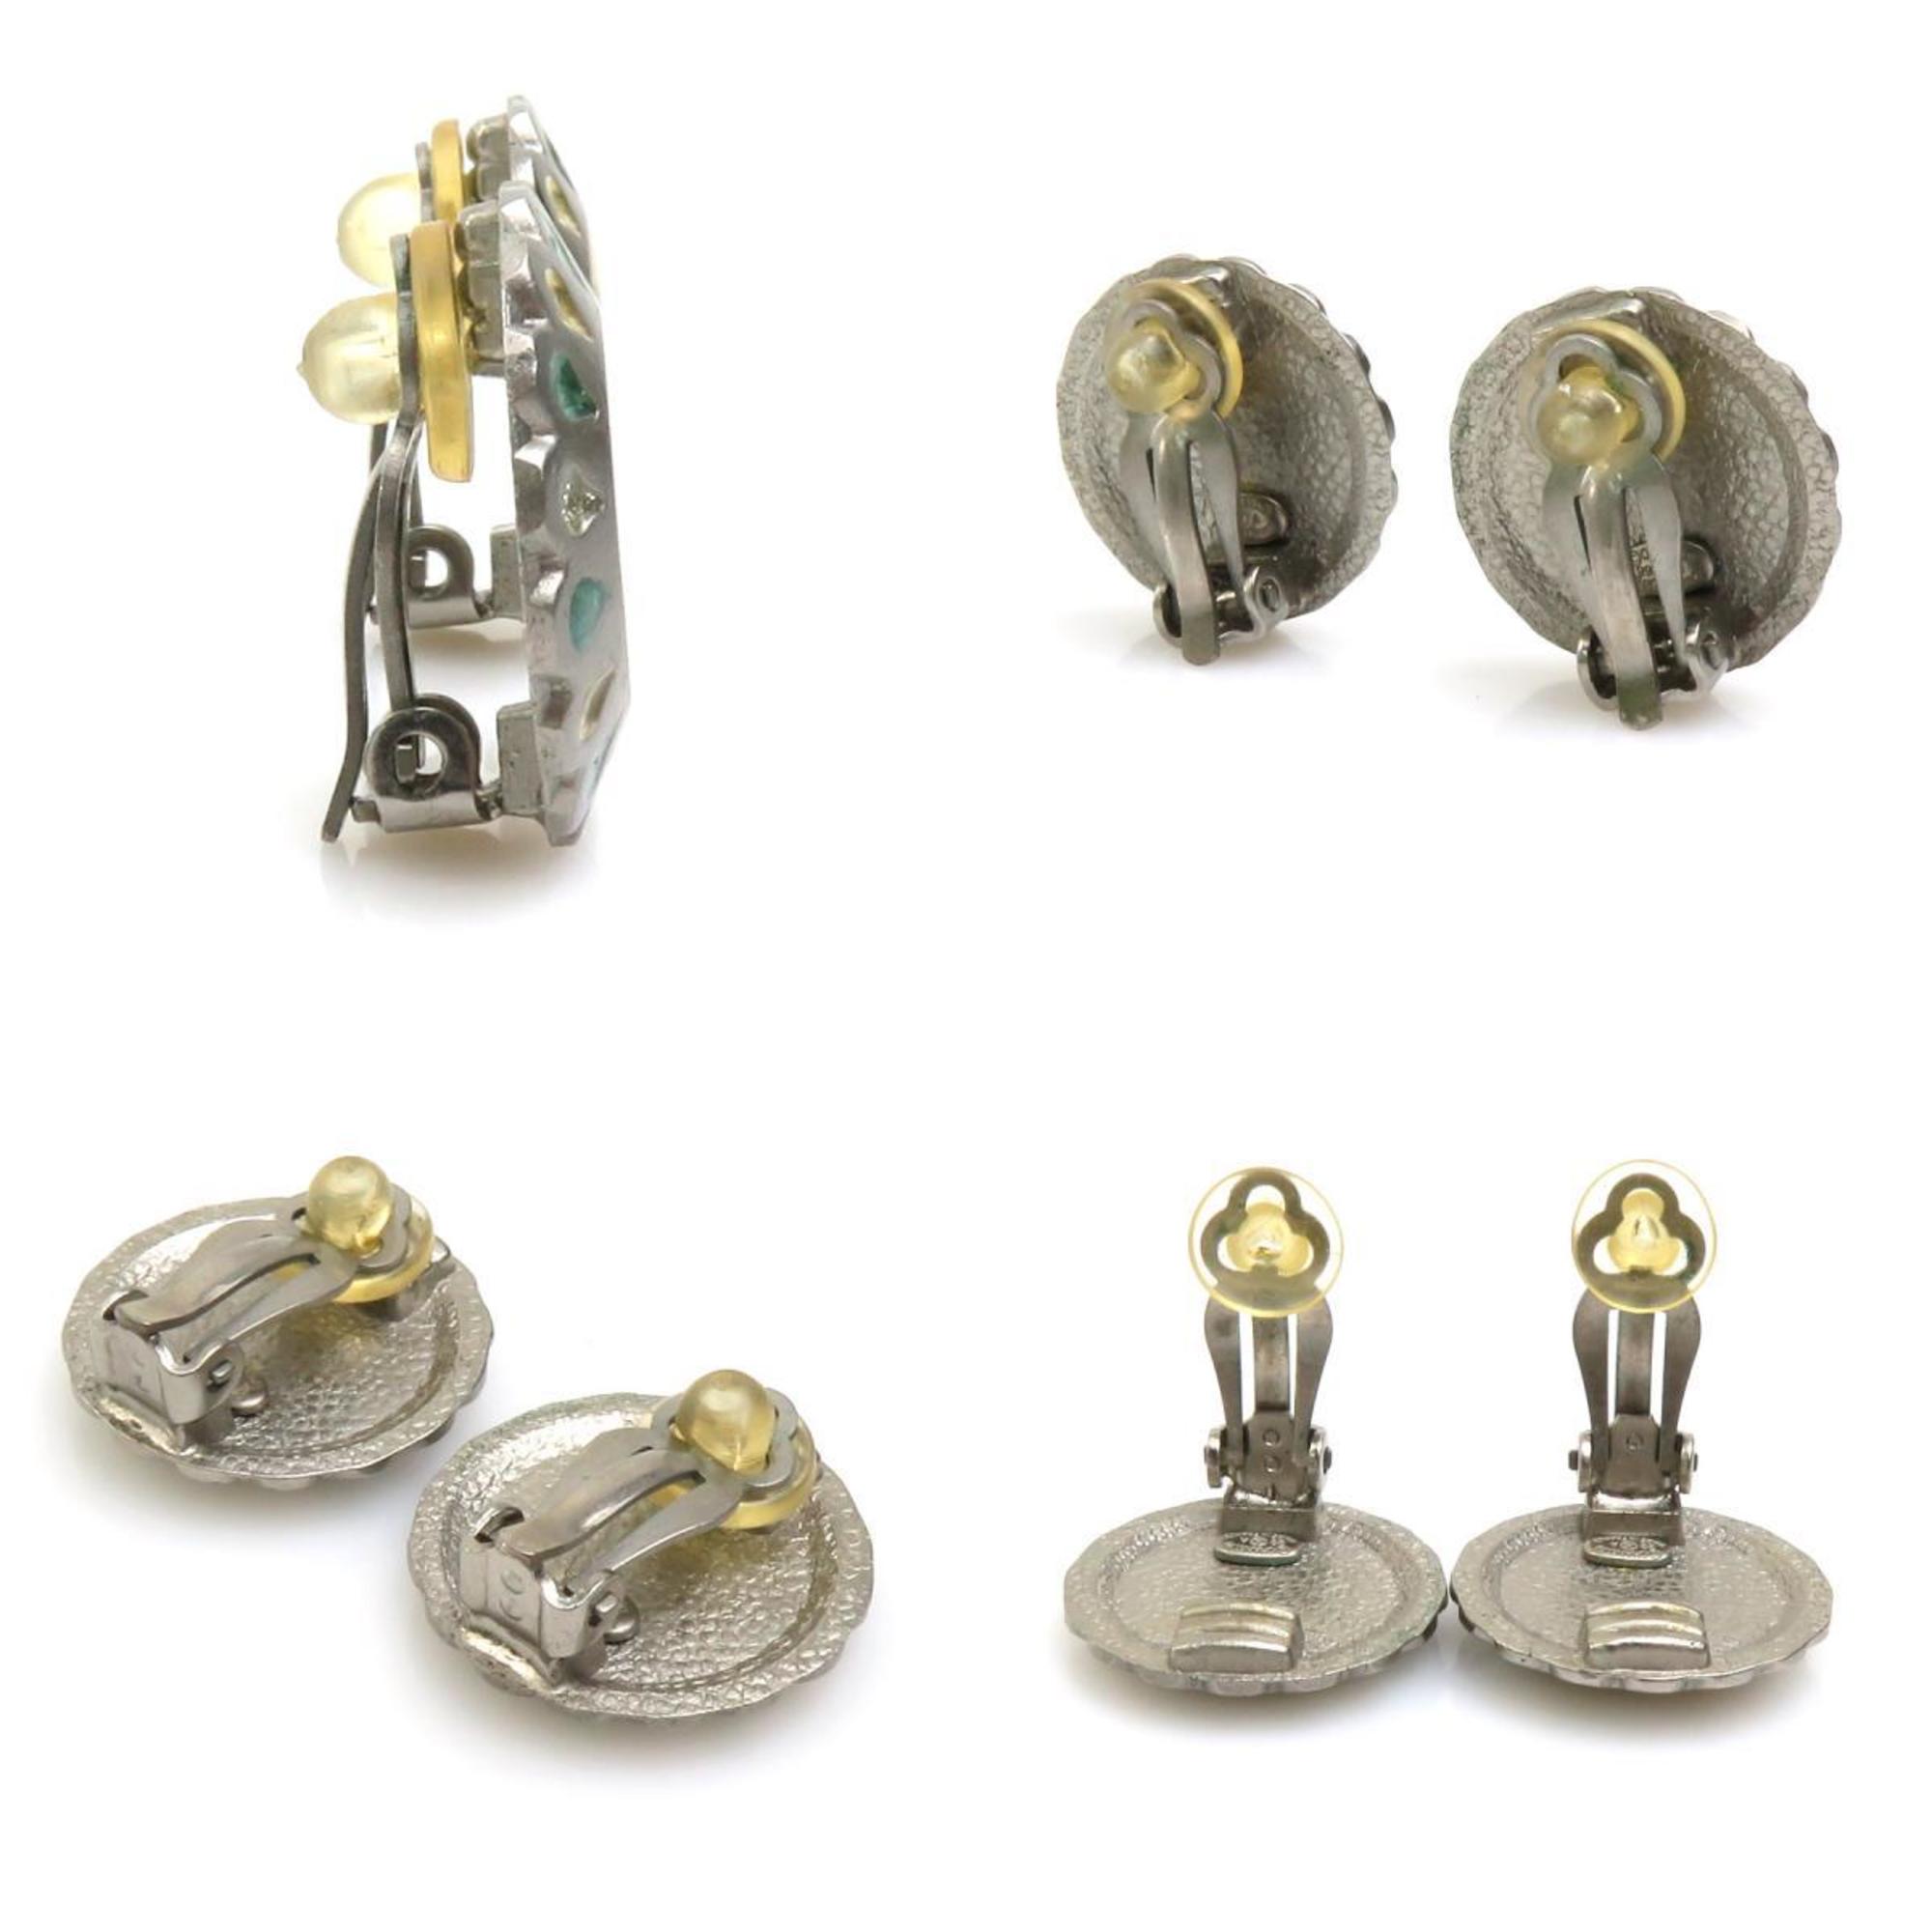 CHANEL Metal Silver Earrings for Women h30281f